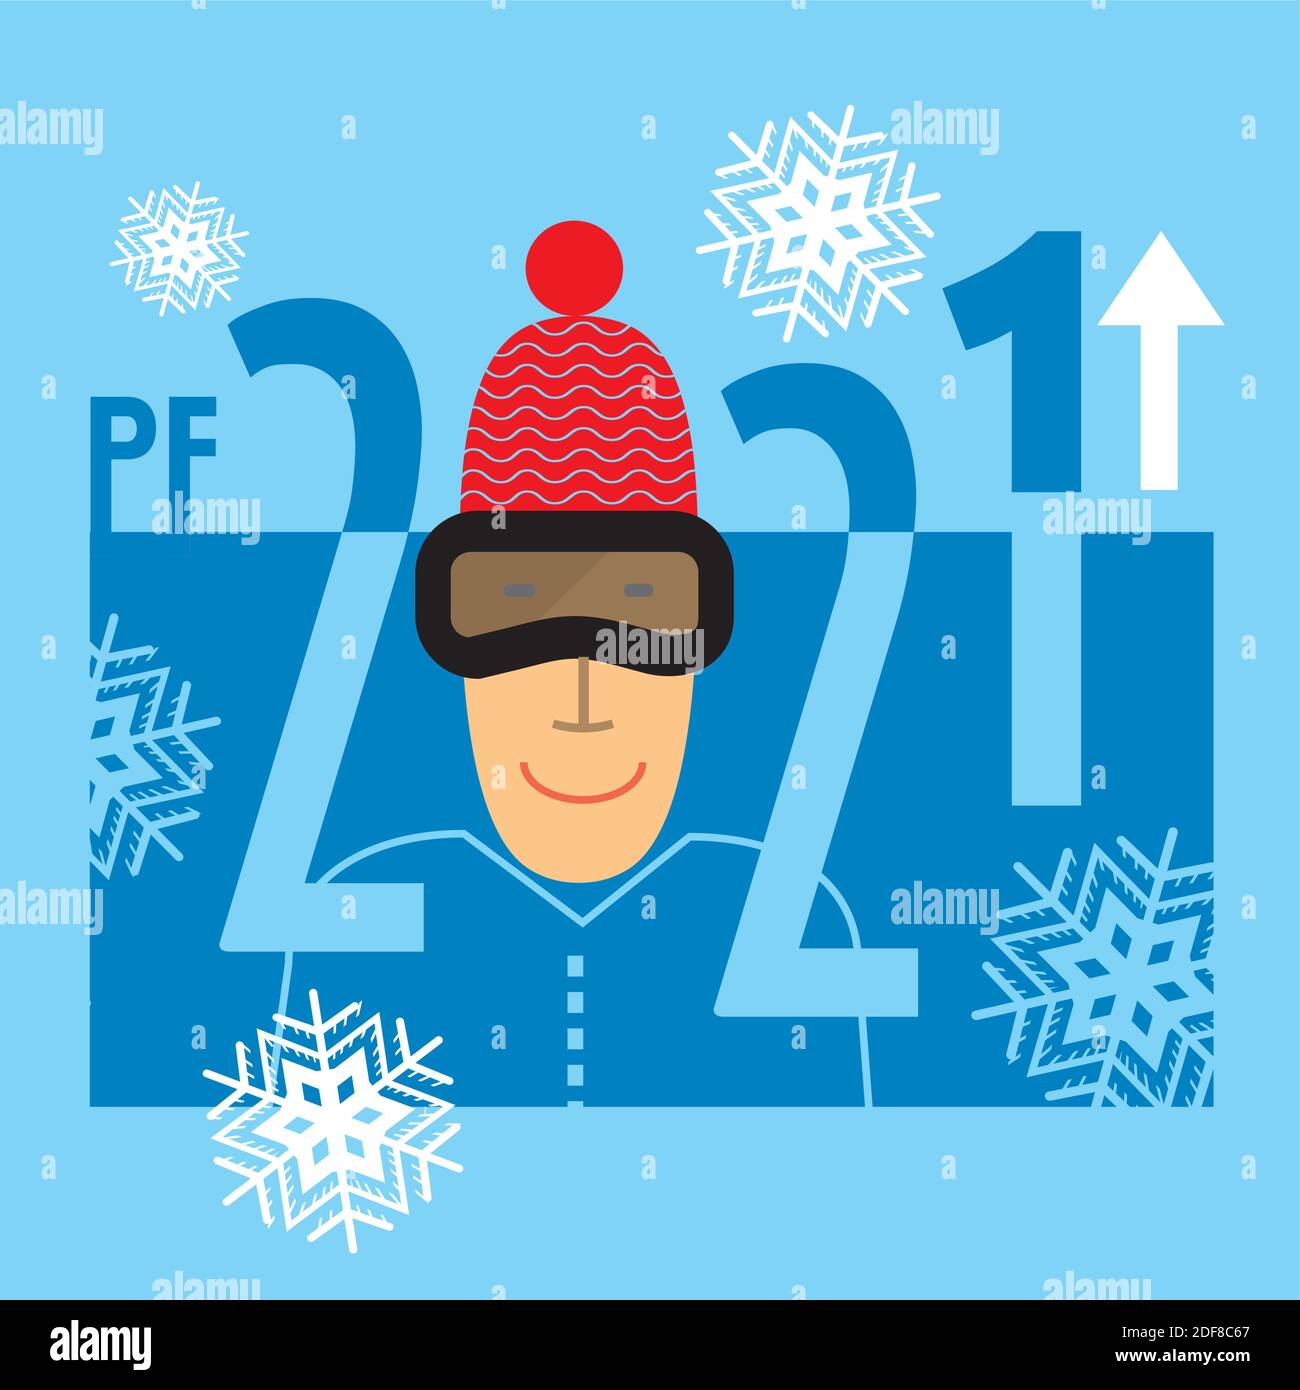 Neujahr lustige Grußkarte 2021, Skifahrer, Schneeflocken. PF-Karte mit der Nummer 2021 auf Schneeflocke Hintergrund mit Mann mit Skibrille. Vektor verfügbar. Stock Vektor